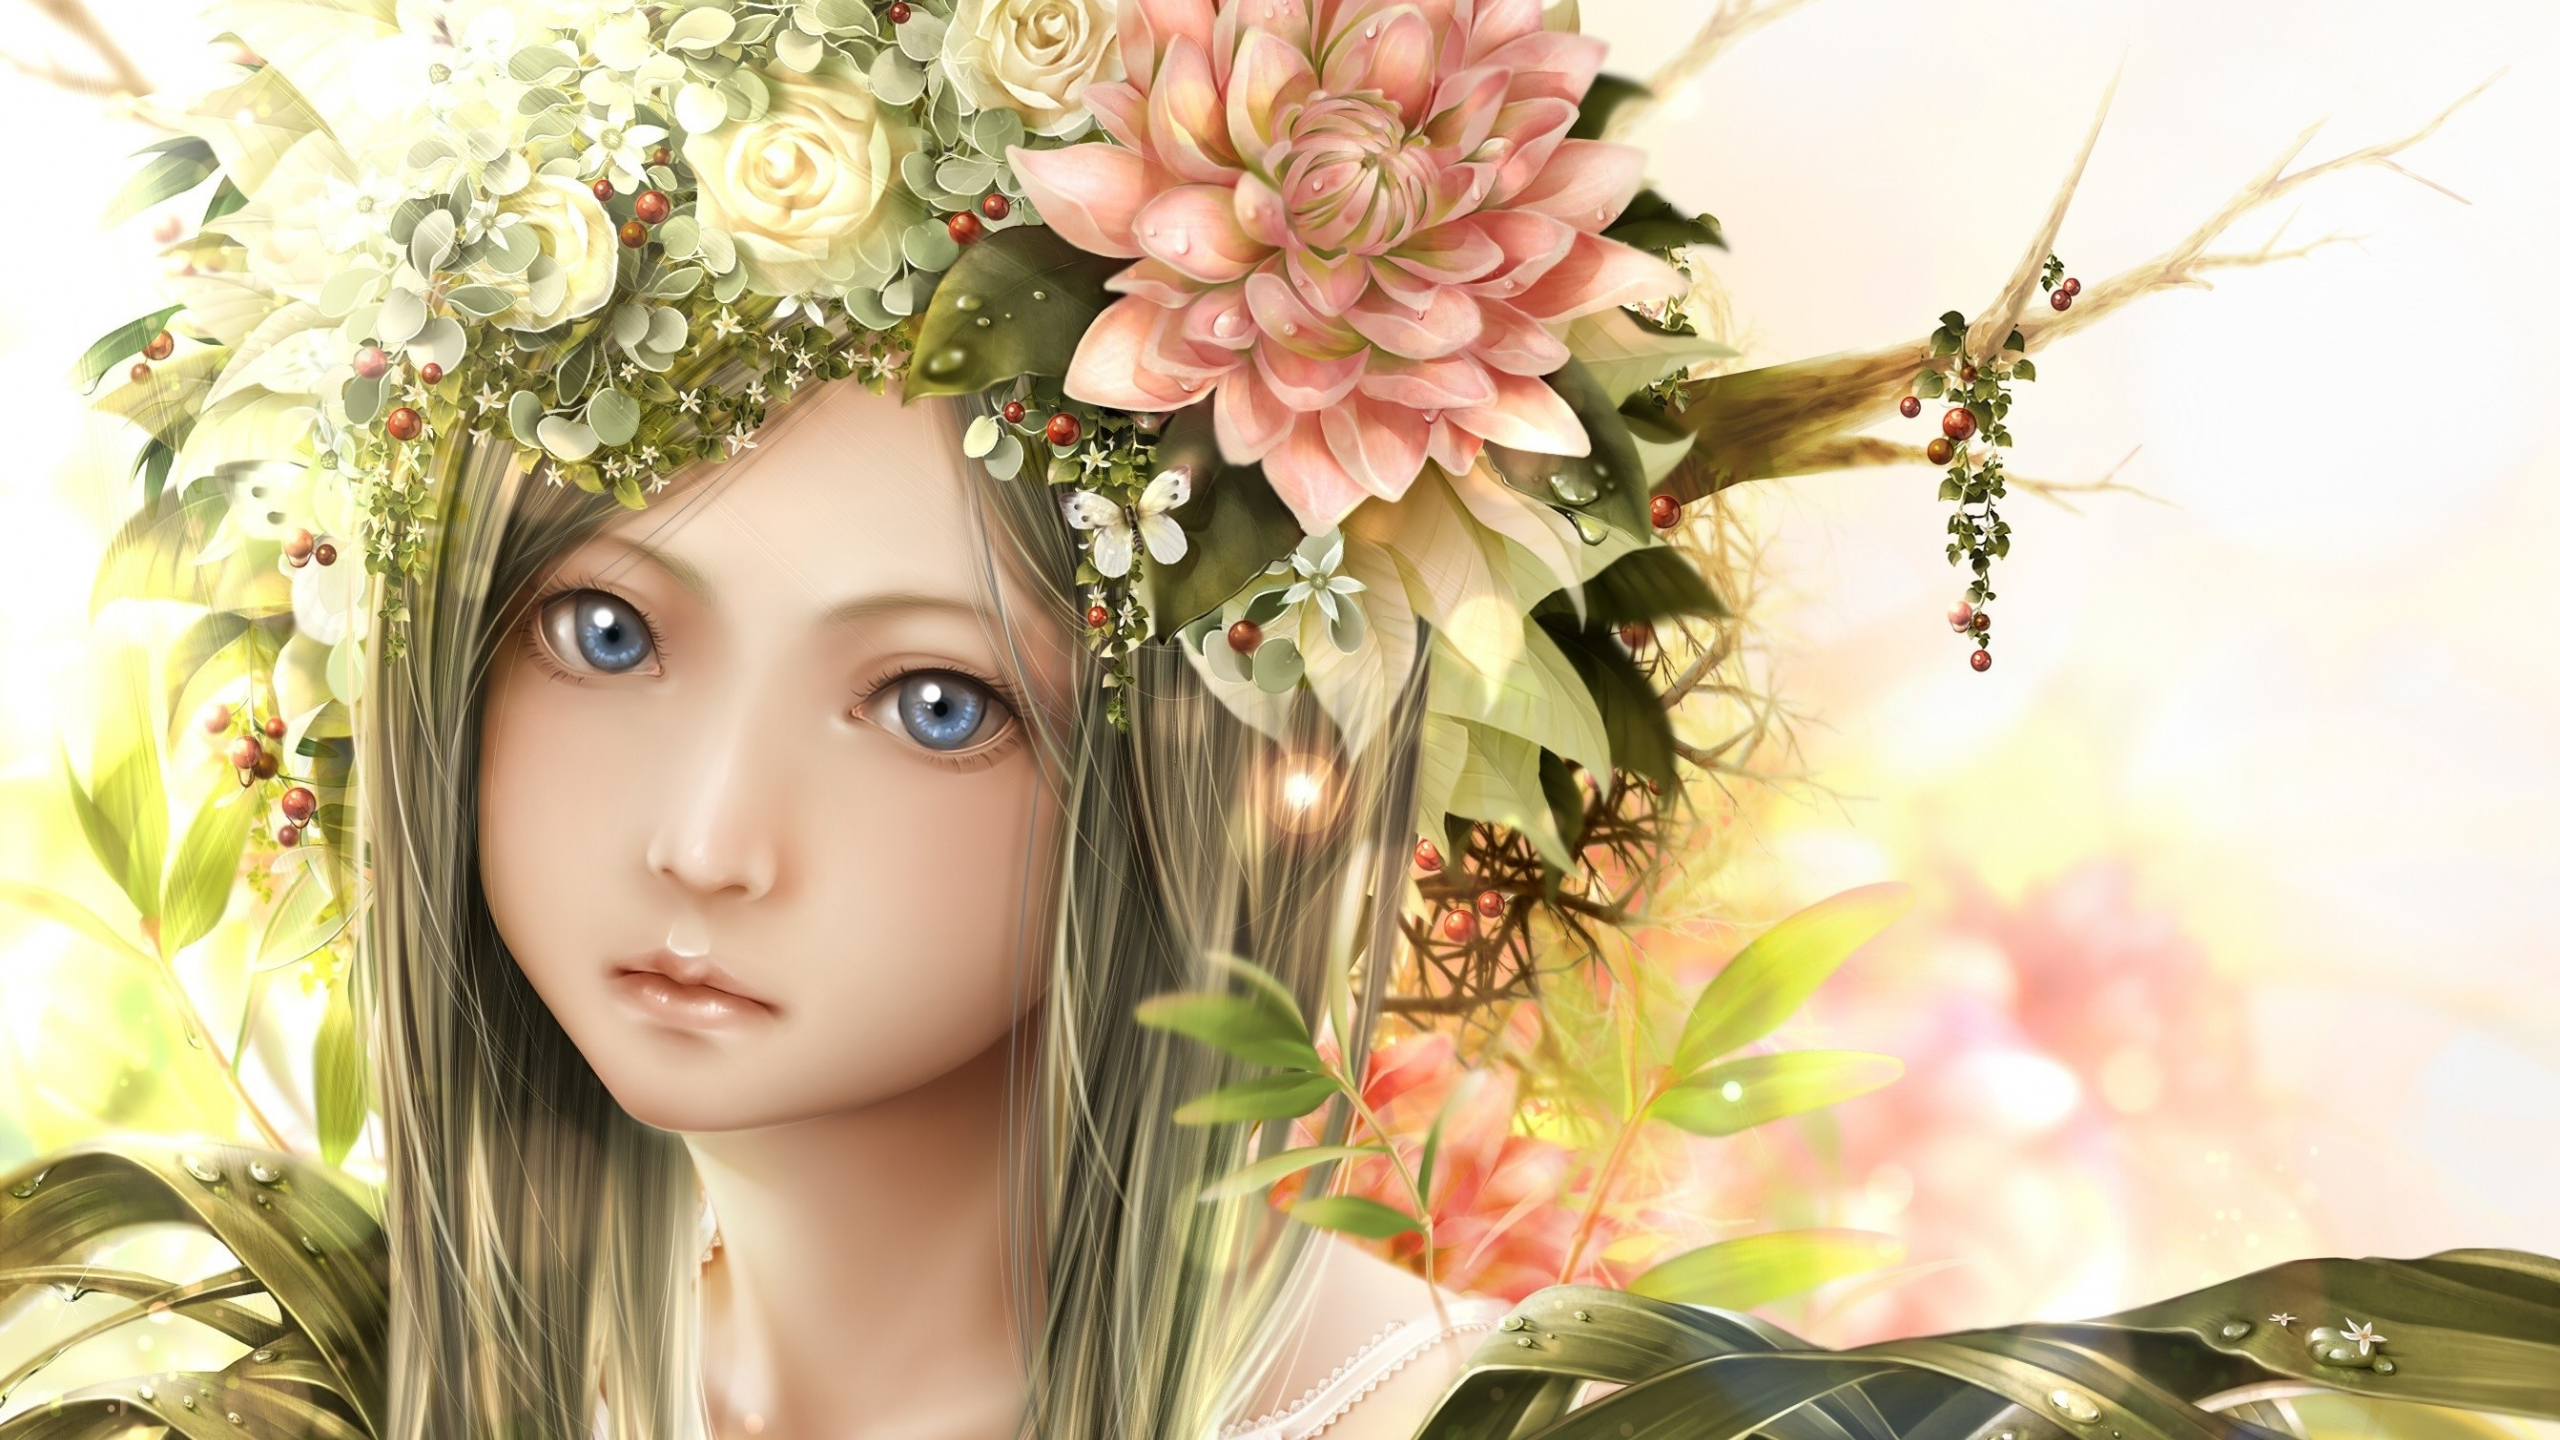 взгляд, портрет, девочка, венок, цветы, листья, bouno, satoshi, веточки, лицо